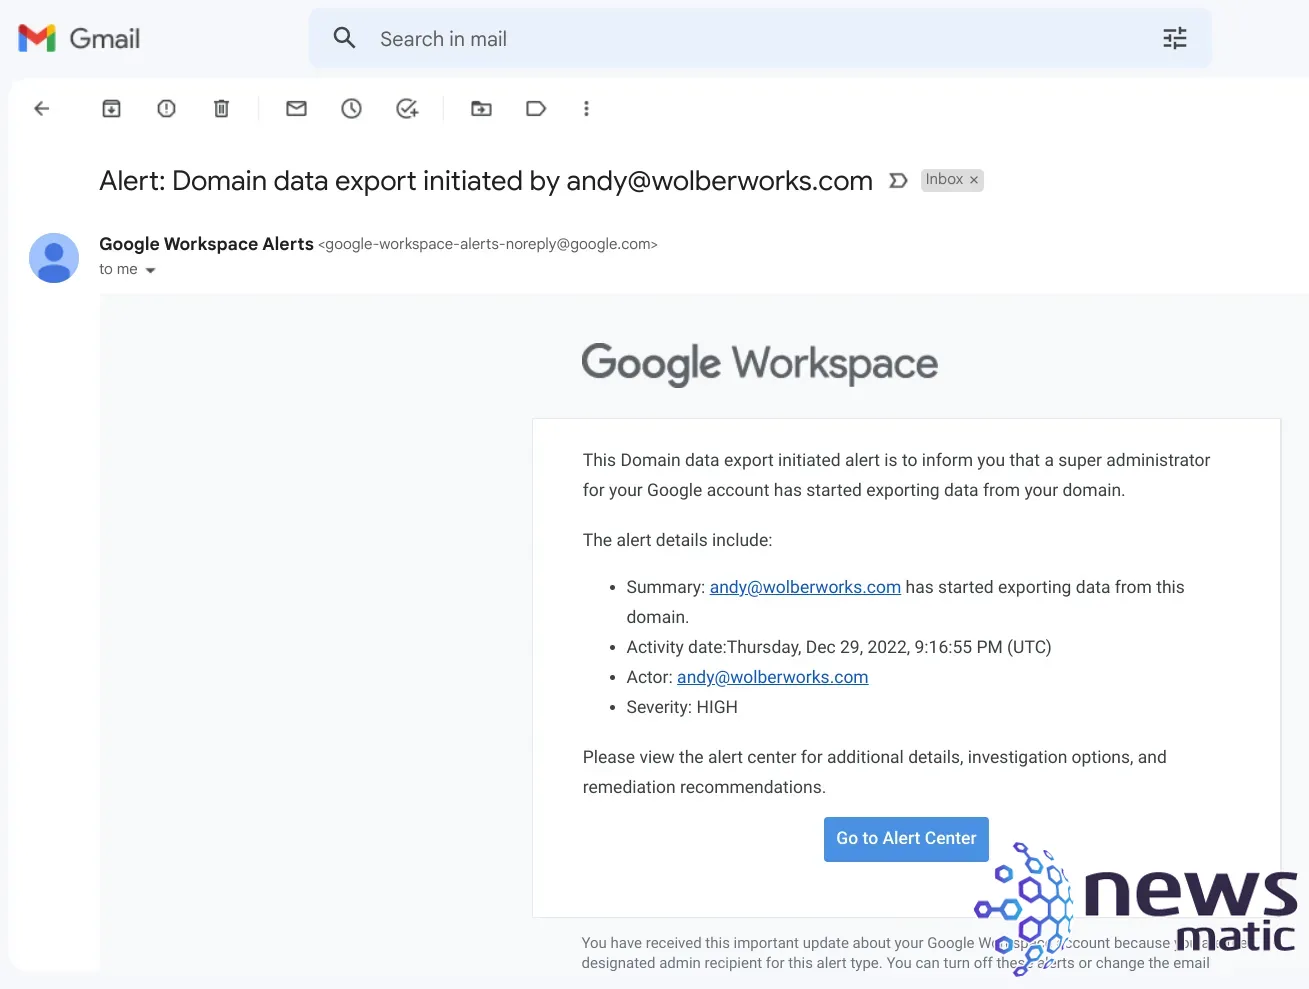 Cómo exportar y preservar datos sensibles en Google Workspace - Nube | Imagen 5 Newsmatic